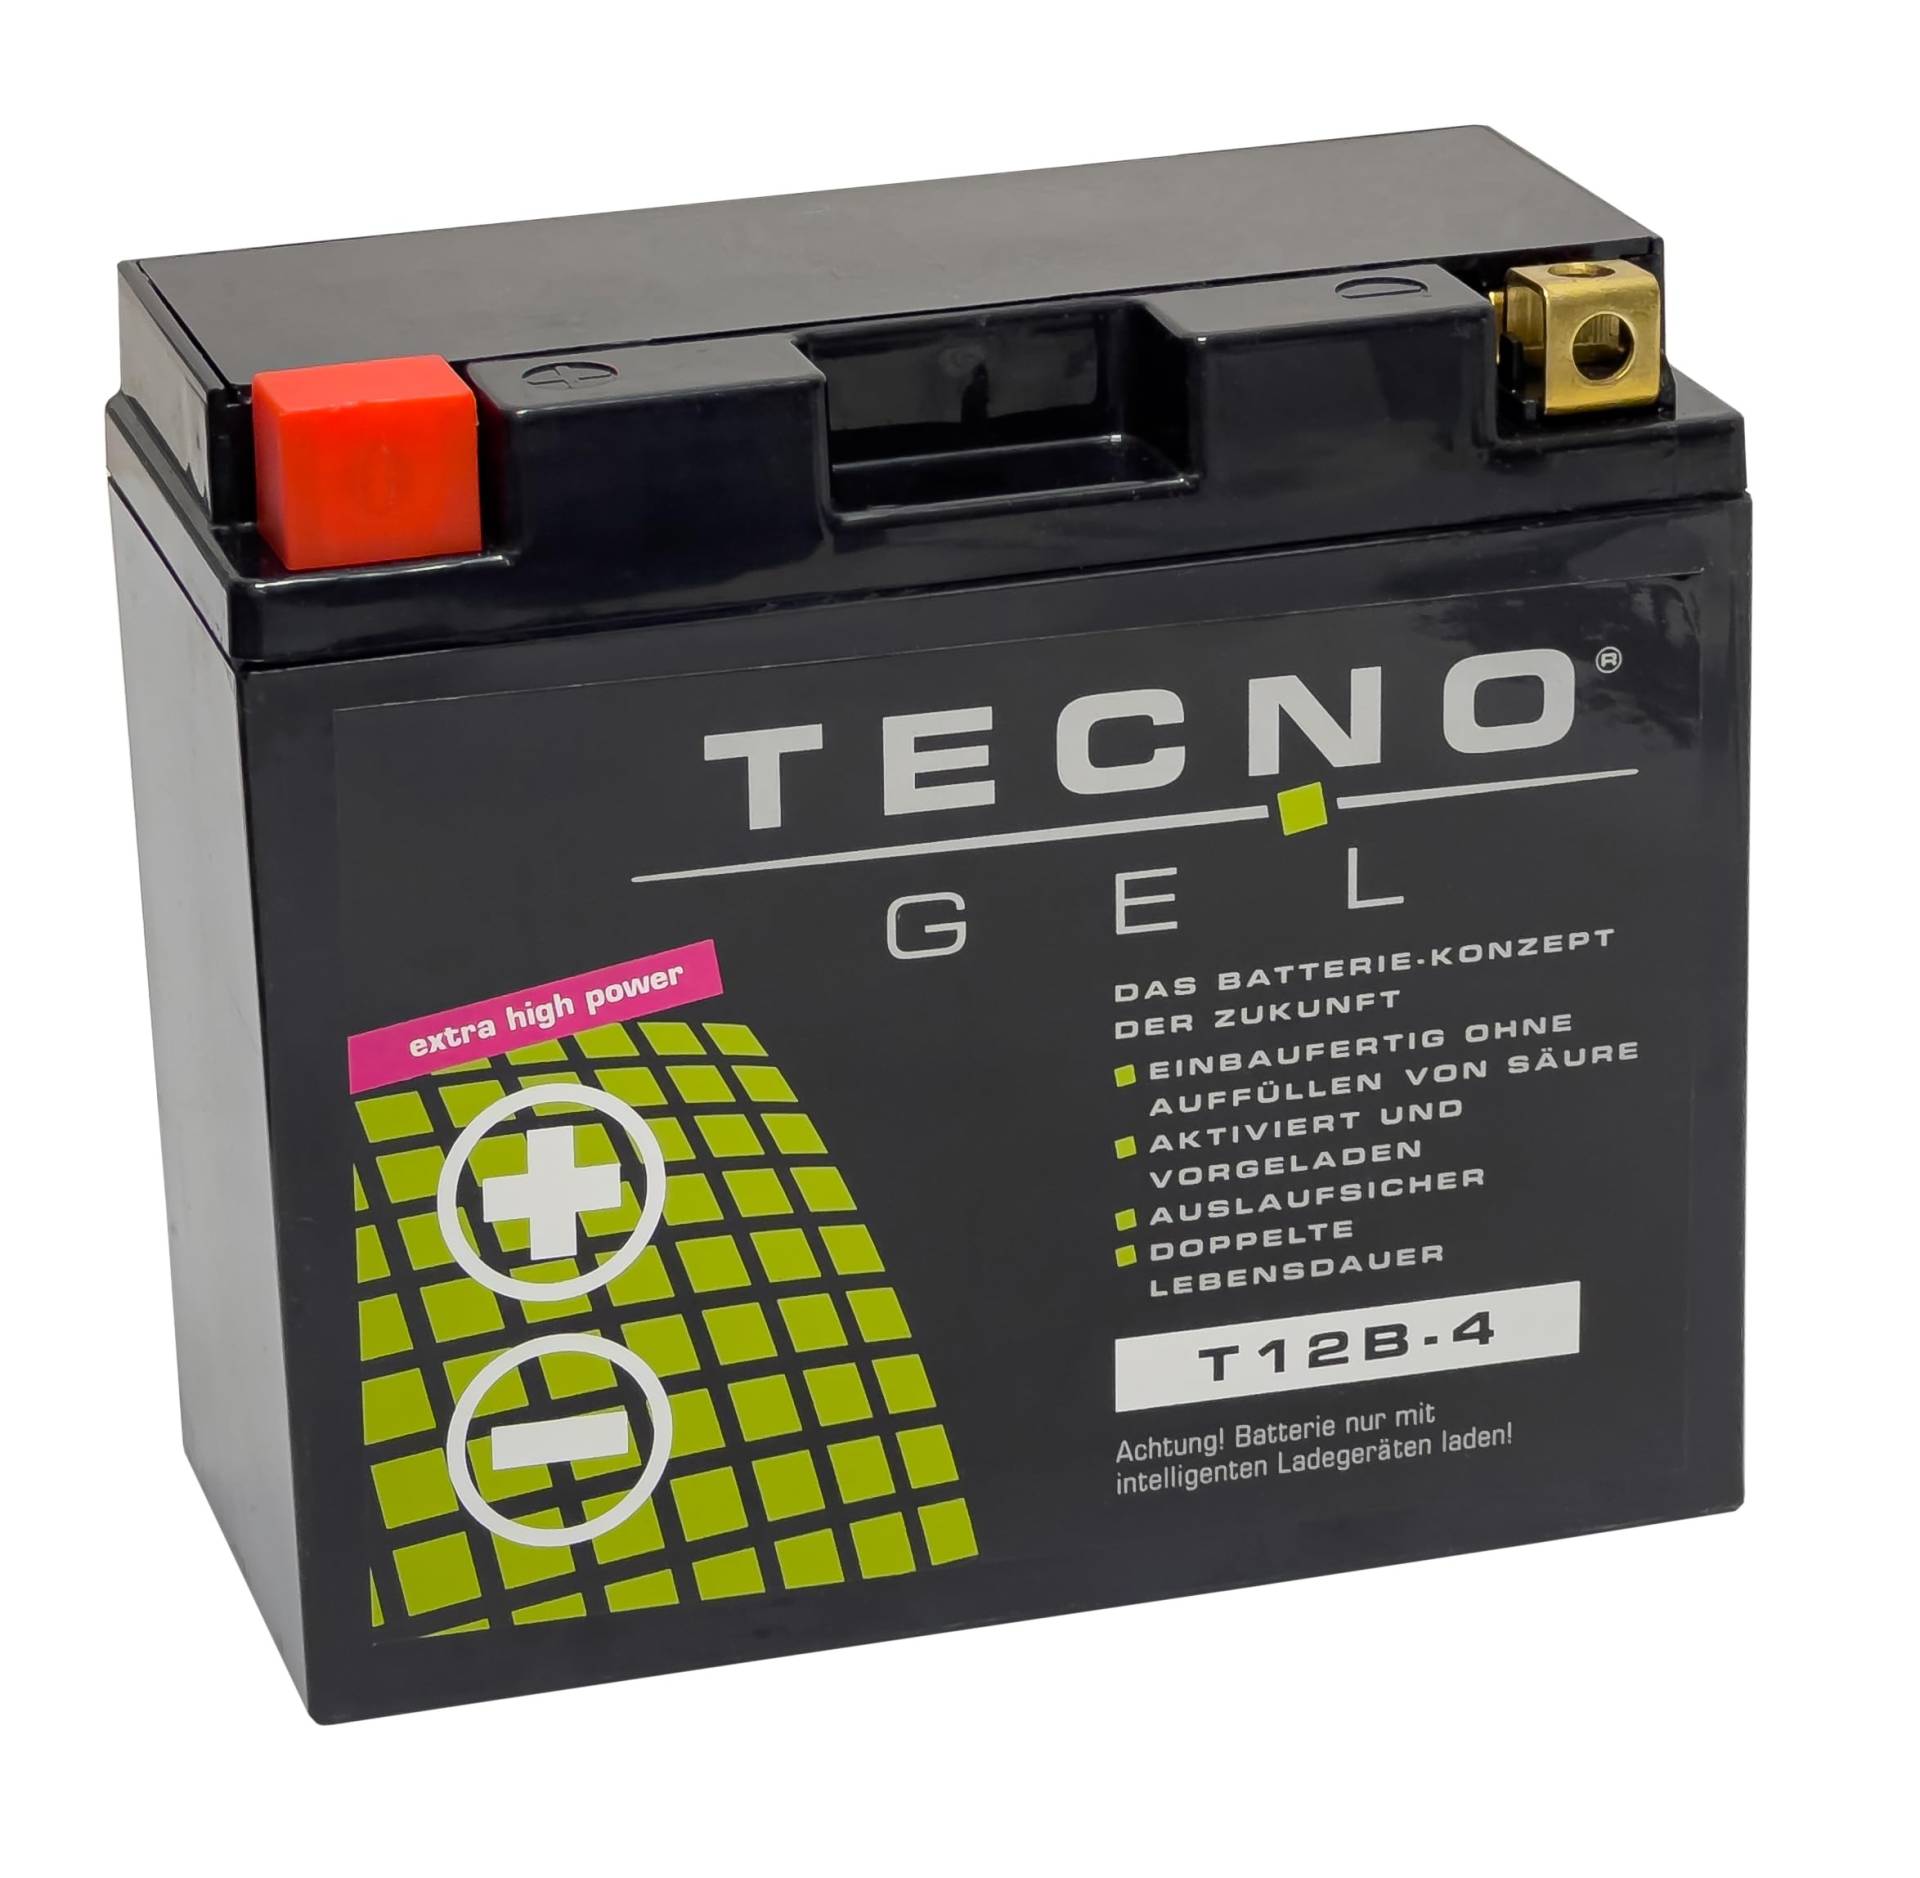 TECNO-GEL BATTERIE für YT12B-4 = YT12B-BS (DIN 51290) für Ducati Desmosedici/Diavel u.a. von Wirth-Federn